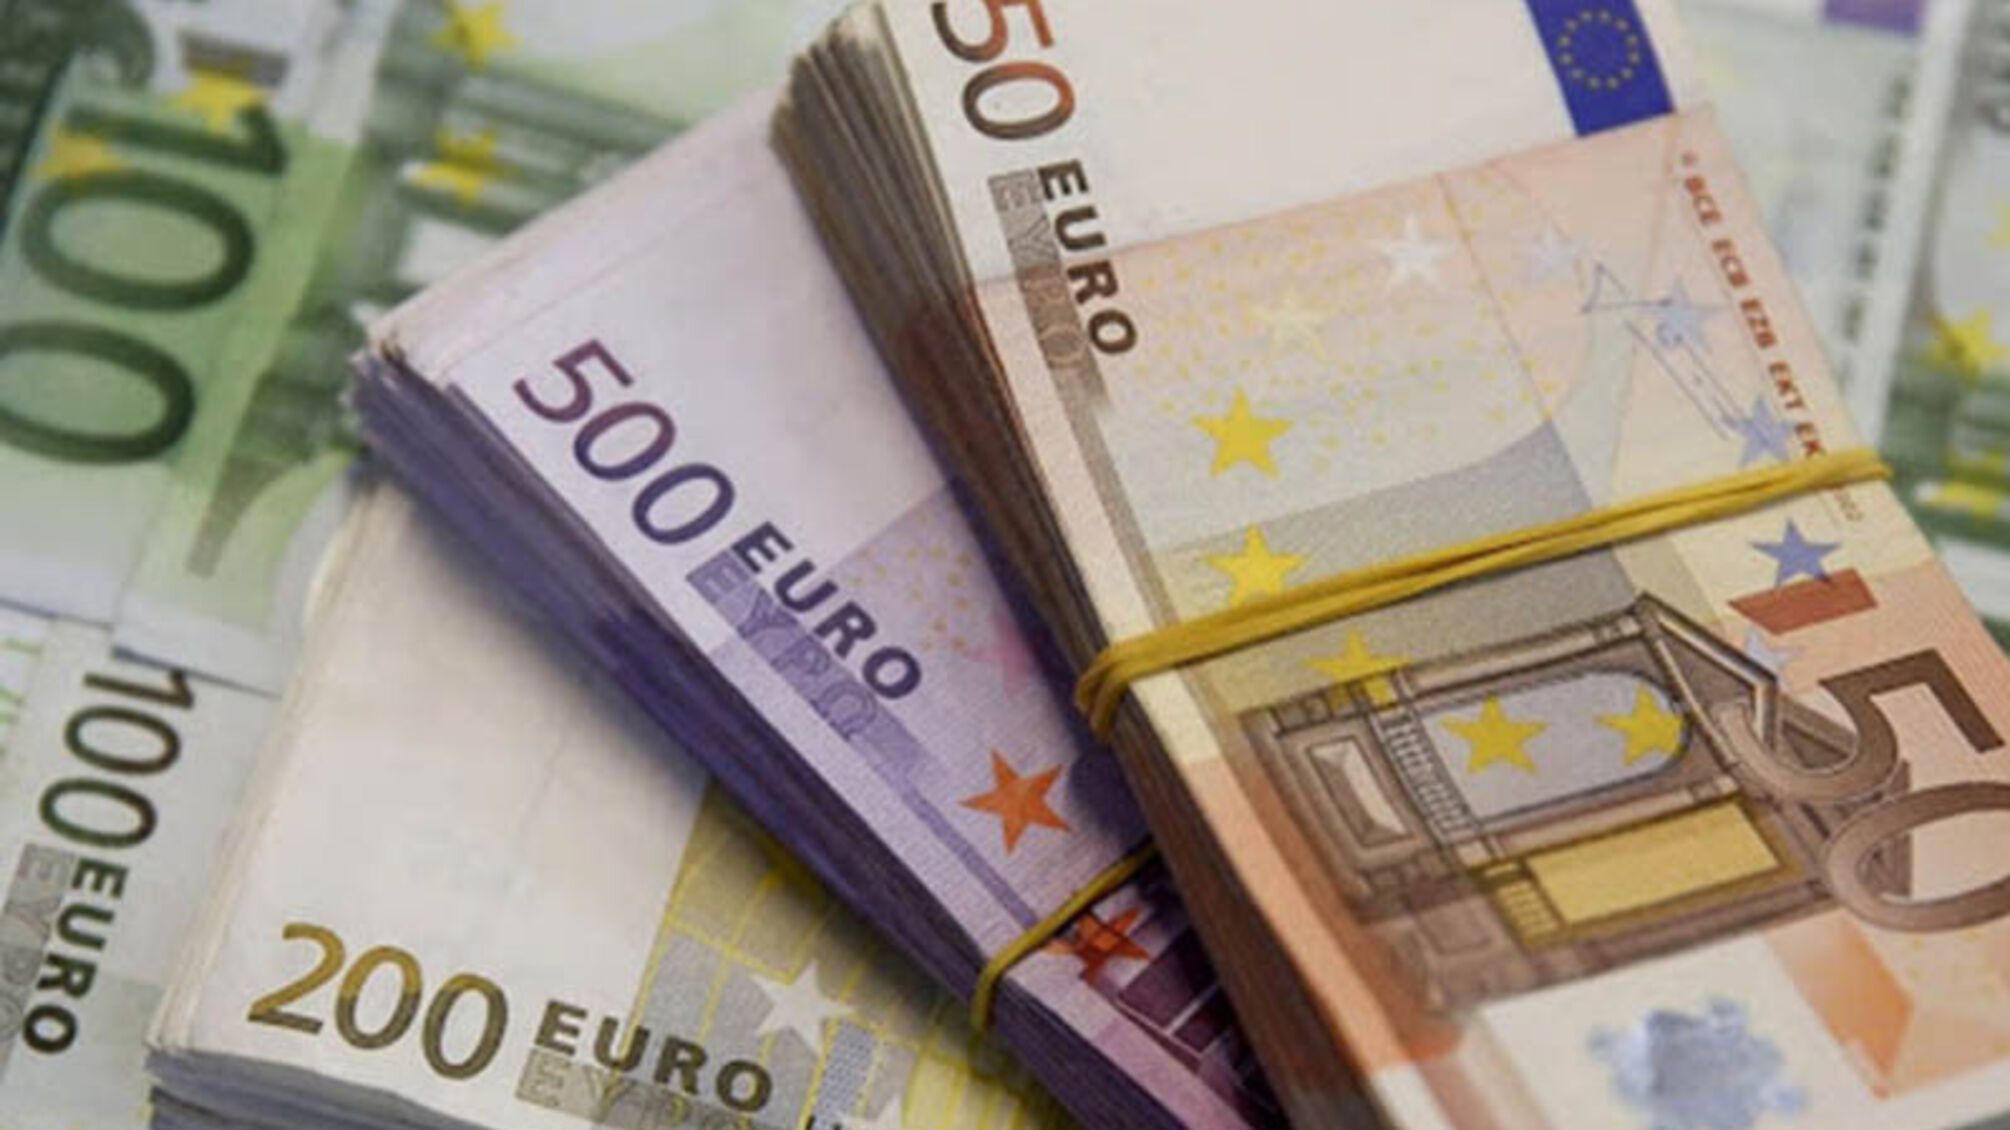 Немецкий госбанк предоставит Украине 150 миллионов евро кредитных средств: на что они будут направлены